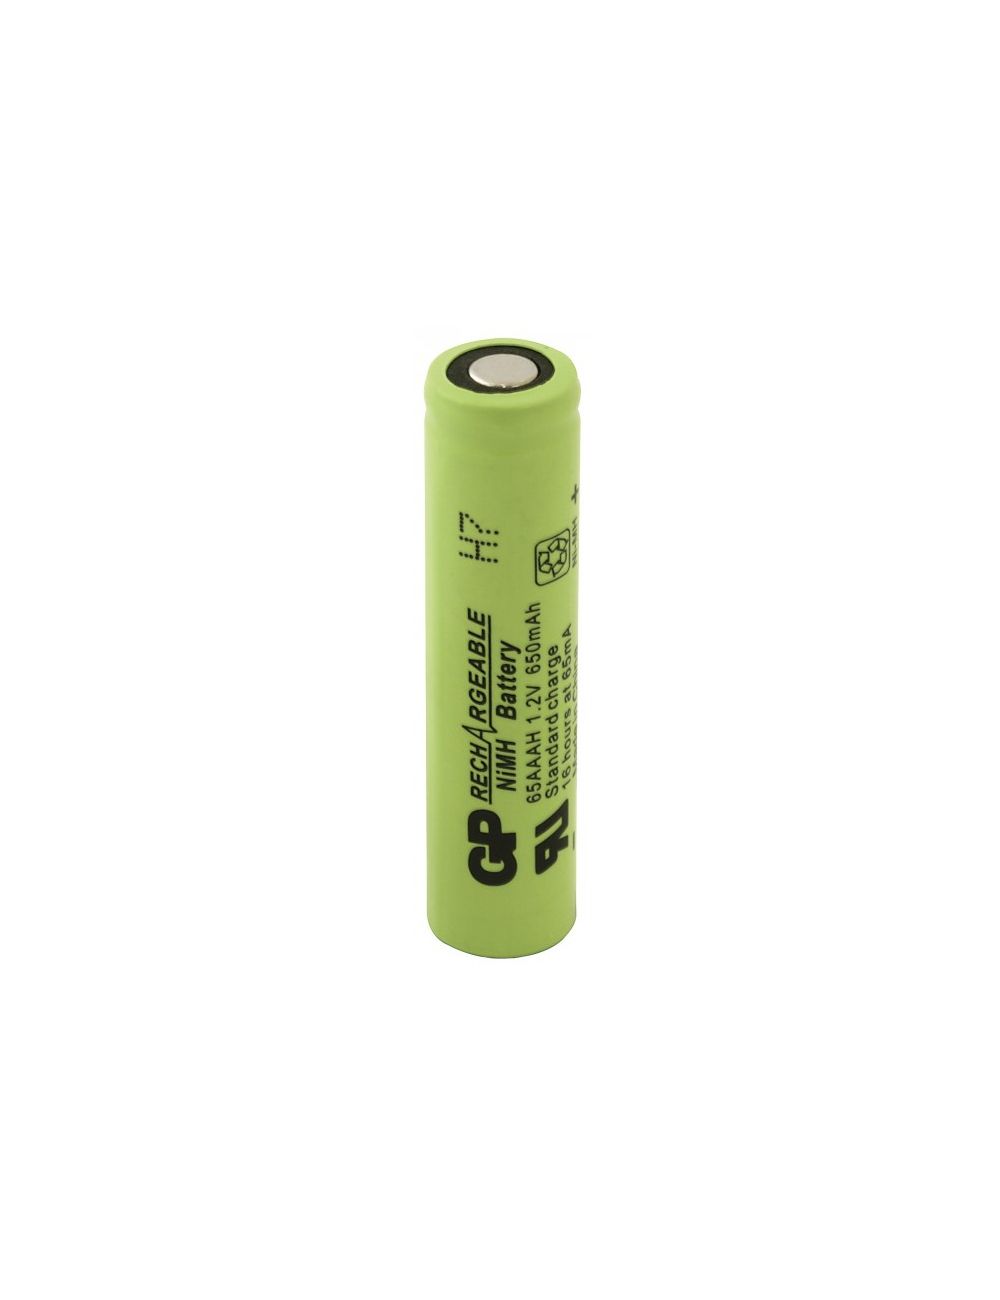 Batería AAA 1,2V 650mAh Ni-Mh GP Batteries (industrial) - AAA650NIMH -  -  - 1